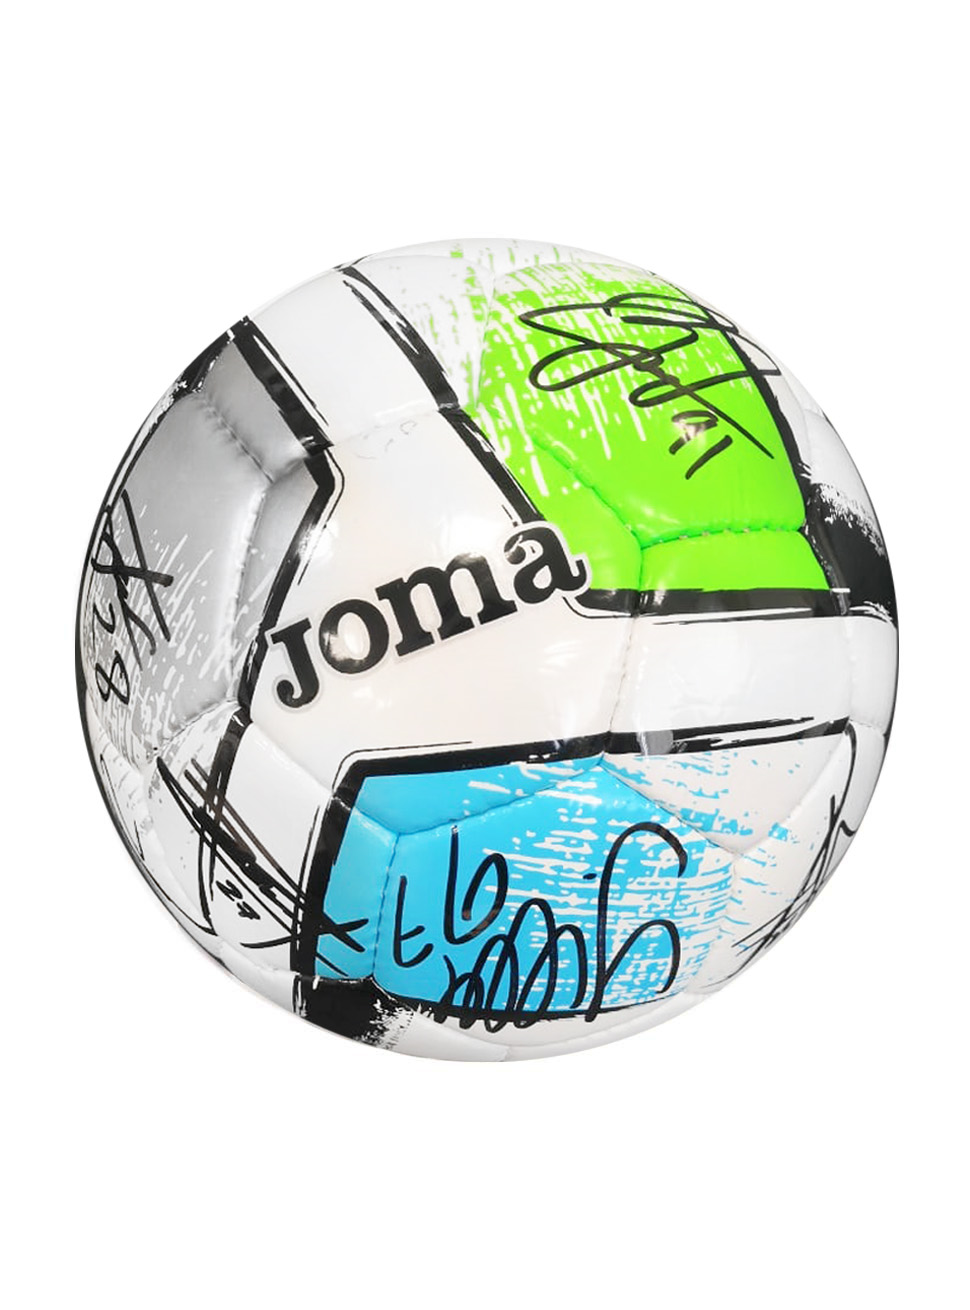 Мяч футбольный Joma DALI 2 с эмблемой ПФК ЦСКА с автографами, размер 5